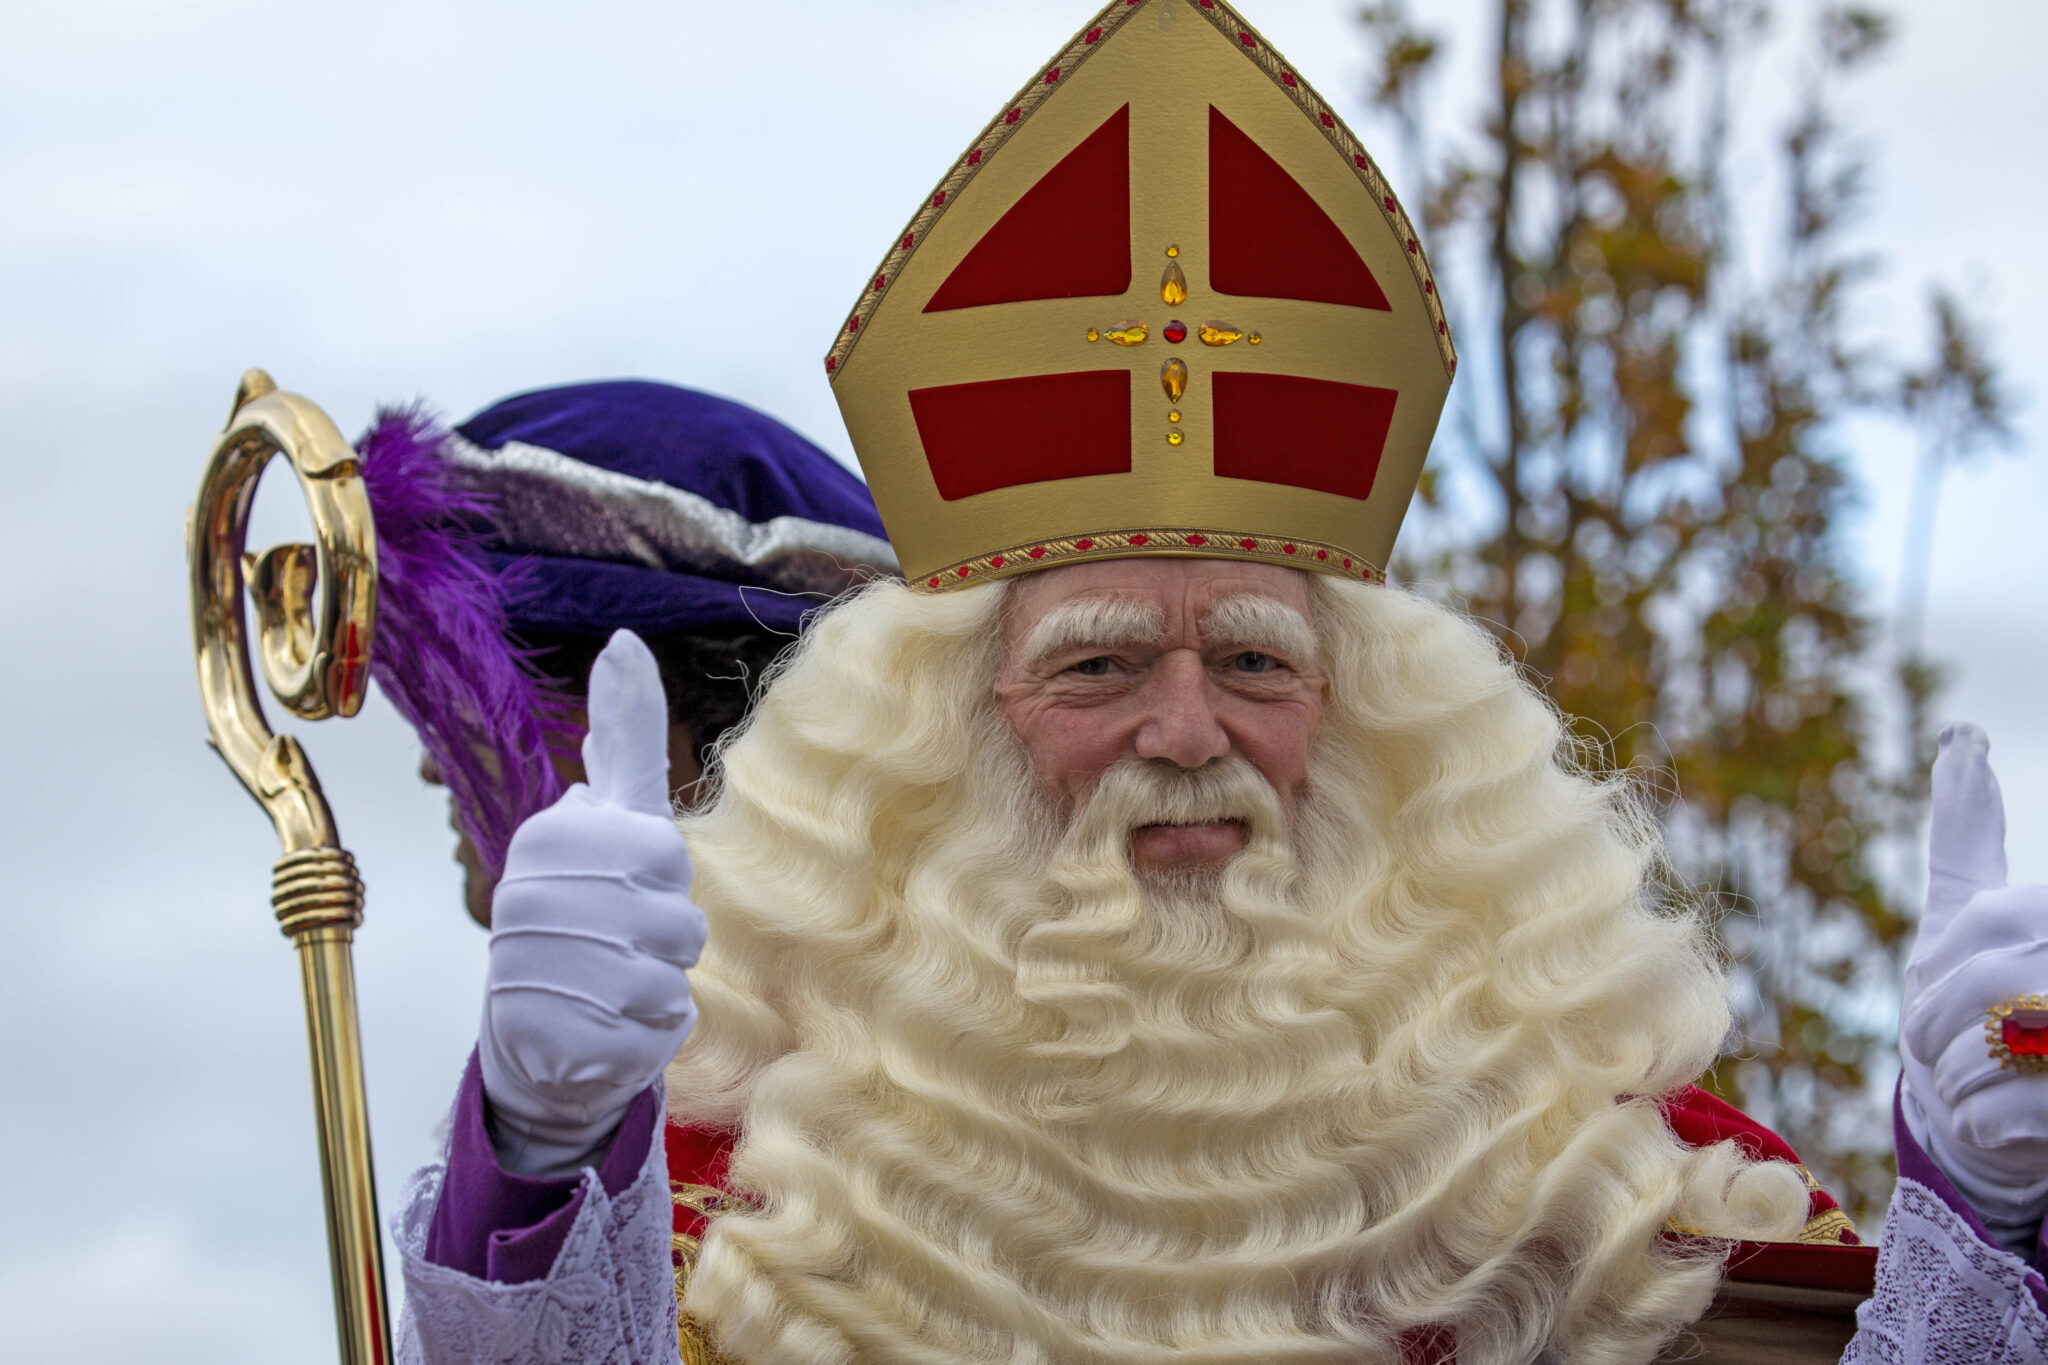 Kruipen ga sightseeing Smerig Intocht Sinterklaas in de gemeente Castricum - De Castricummer